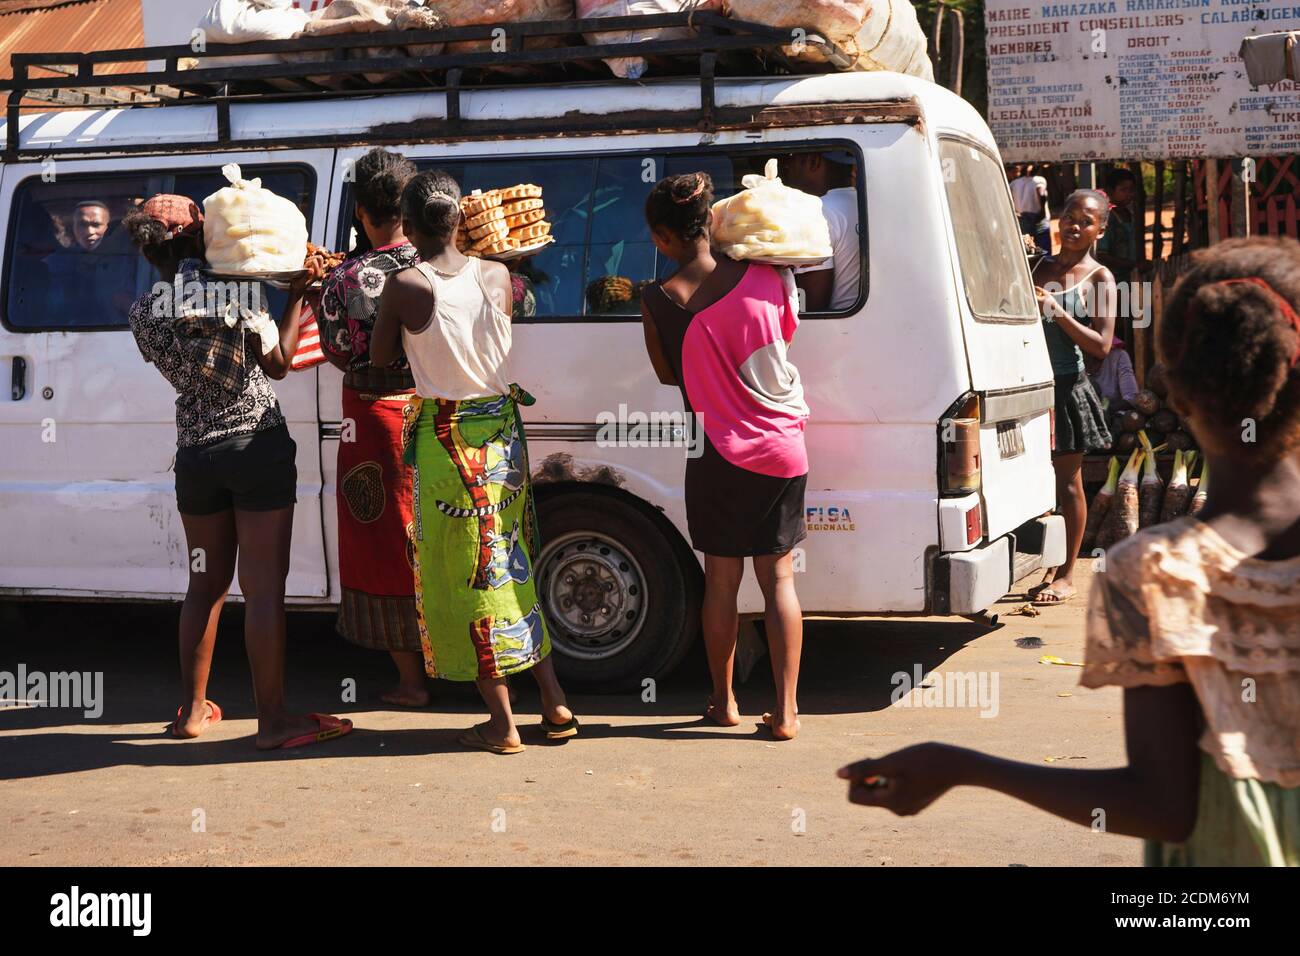 Toliara, Madagaskar - 05. Mai 2019: Gruppe unbekannter madagassischer Frauen, die Lebensmittel an Fahrgäste im weißen Bus verkaufen. Es gibt nicht viele Geschäfte, Waren sind üblich Stockfoto